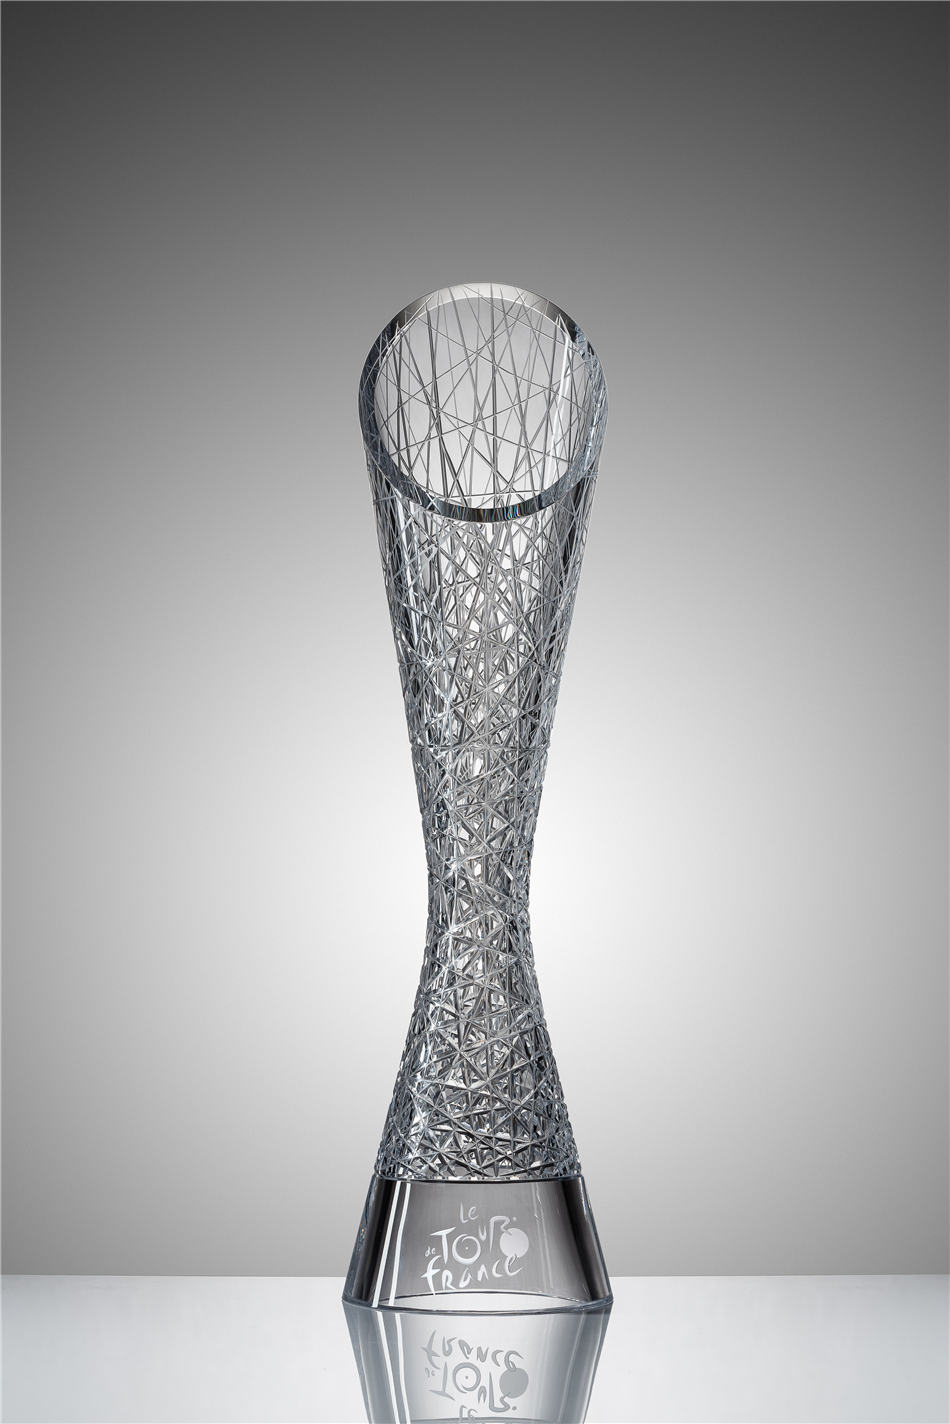 ŠKODA zaprojektowała trofea dla zwycięzców Tour de France